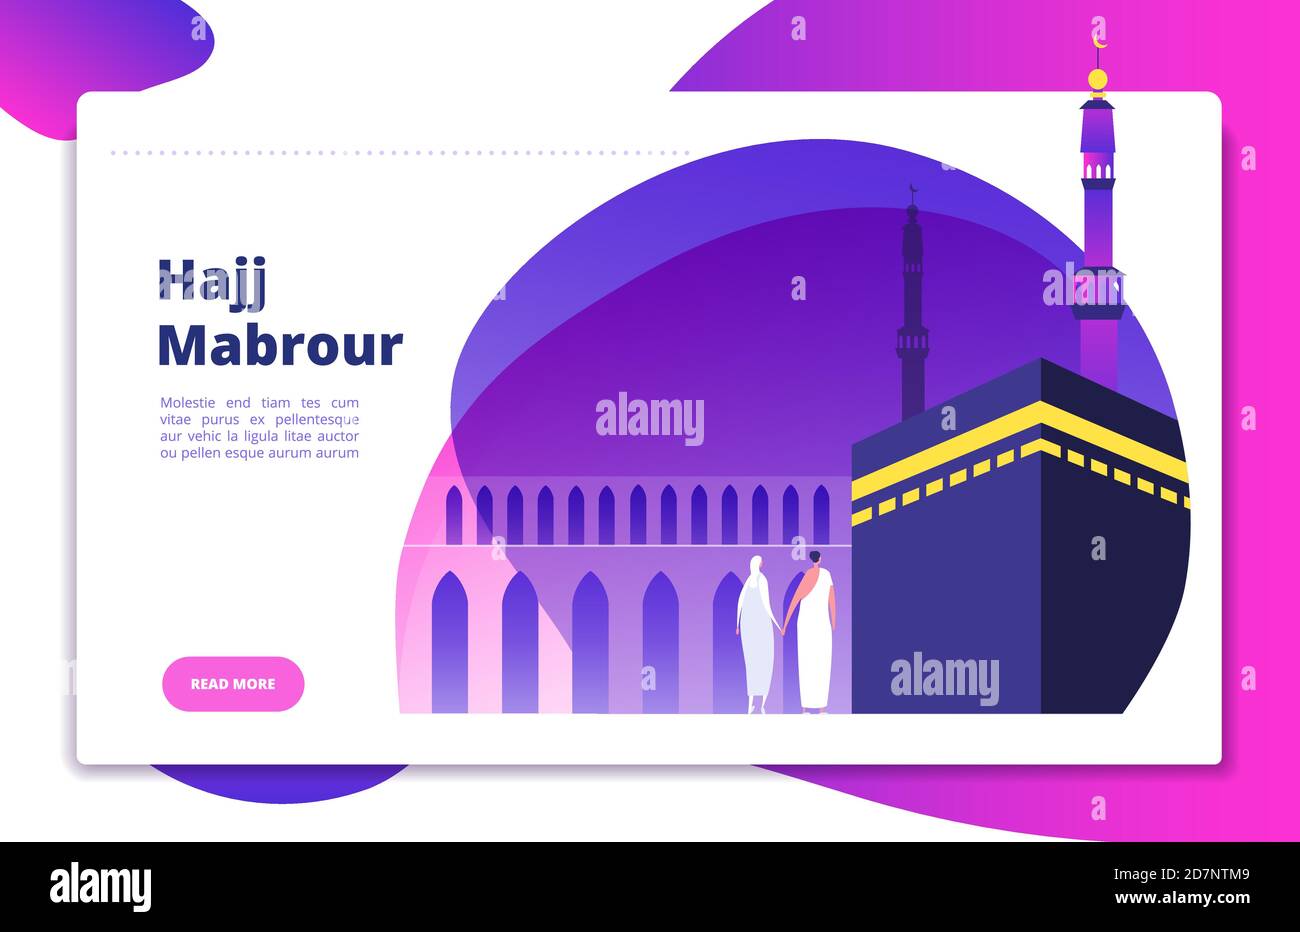 Concept Hajj. Umrah hajj prier les saoudiens priant mabrour musulmans Voyage makkah haram conception moderne de site web à vecteur plat. Illustration de la Mecque du pèlerinage, haj muslim Illustration de Vecteur